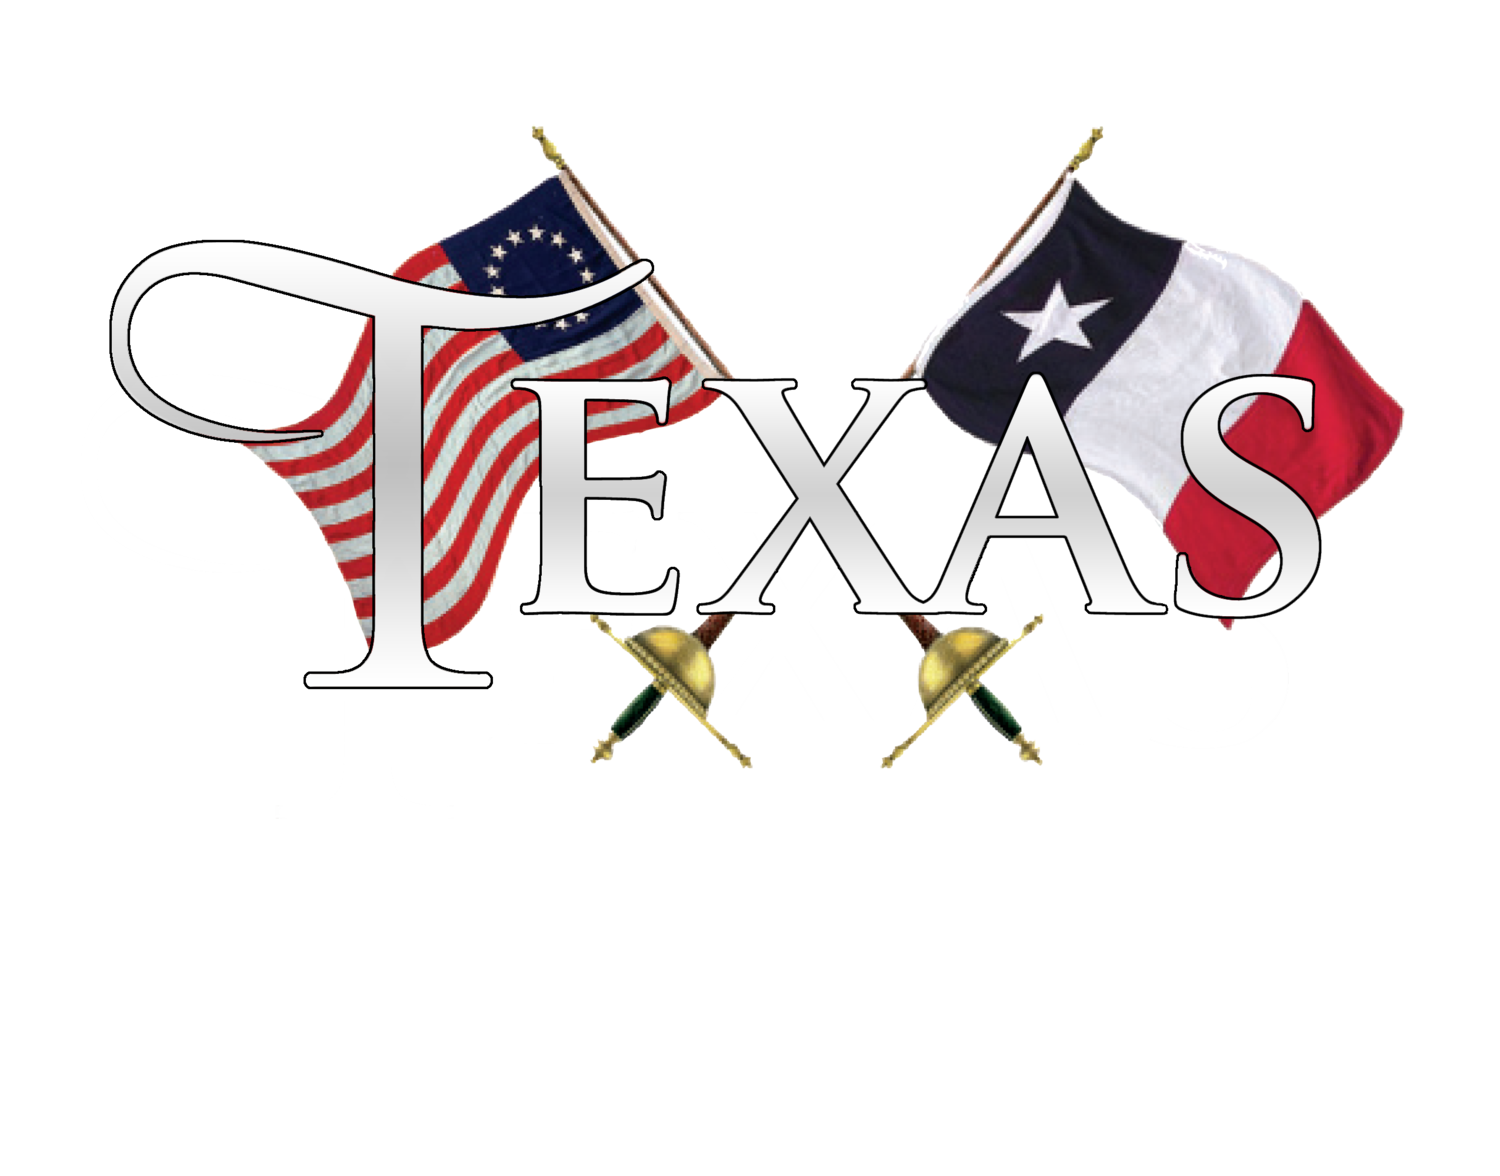 TEXAS: Beef • Fish • Fowl